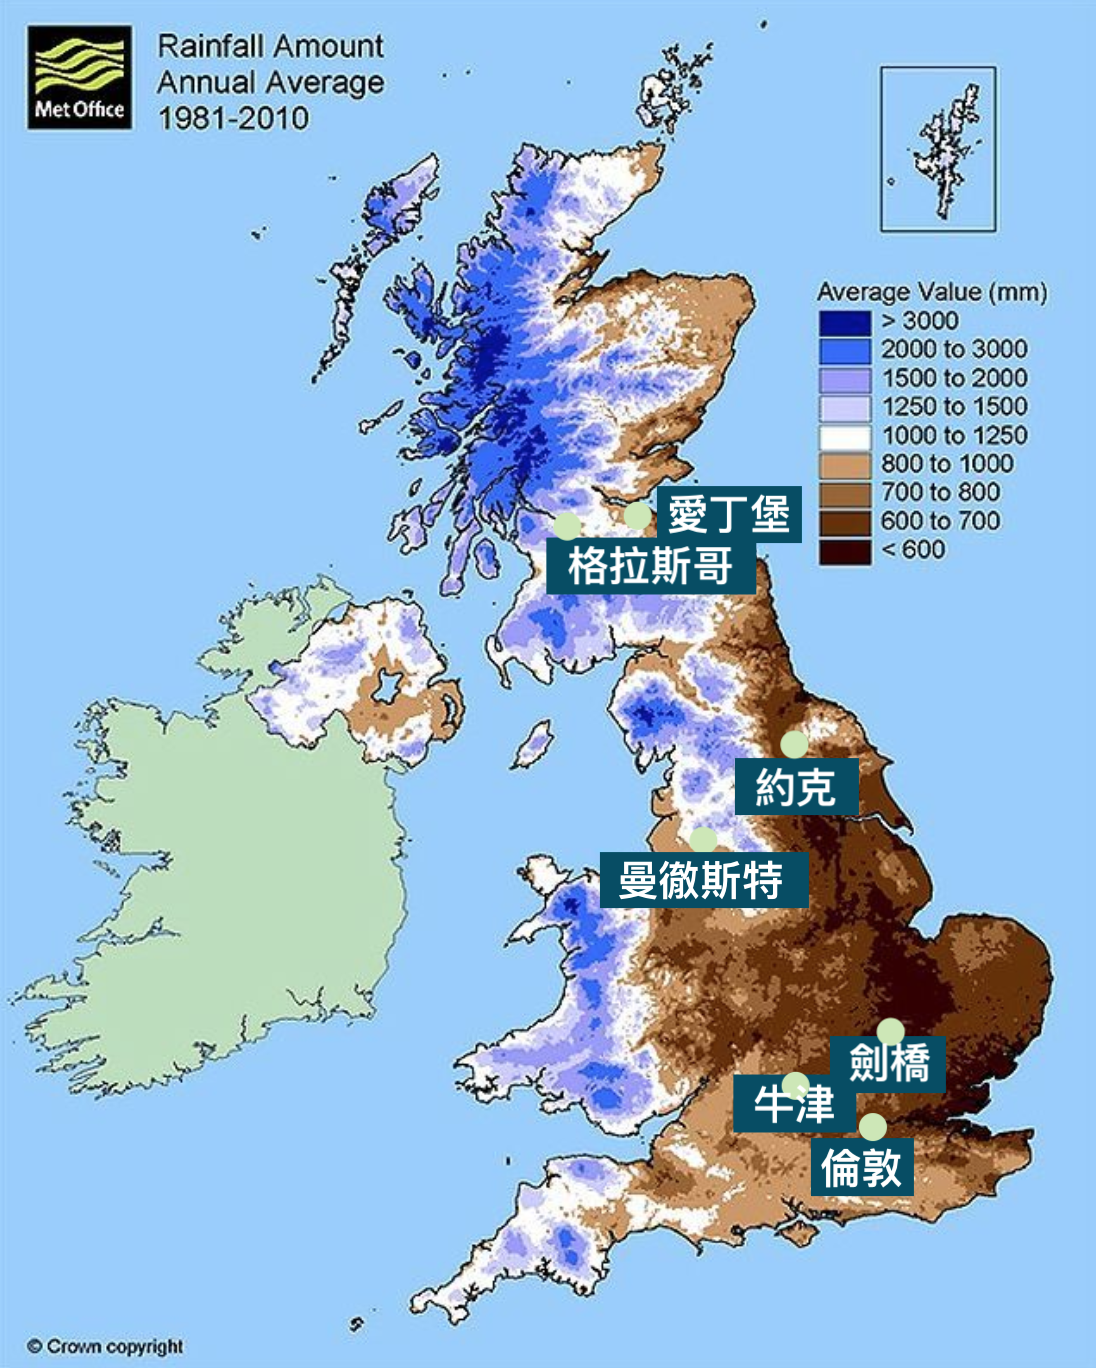 英國自由行-英國年降雨量